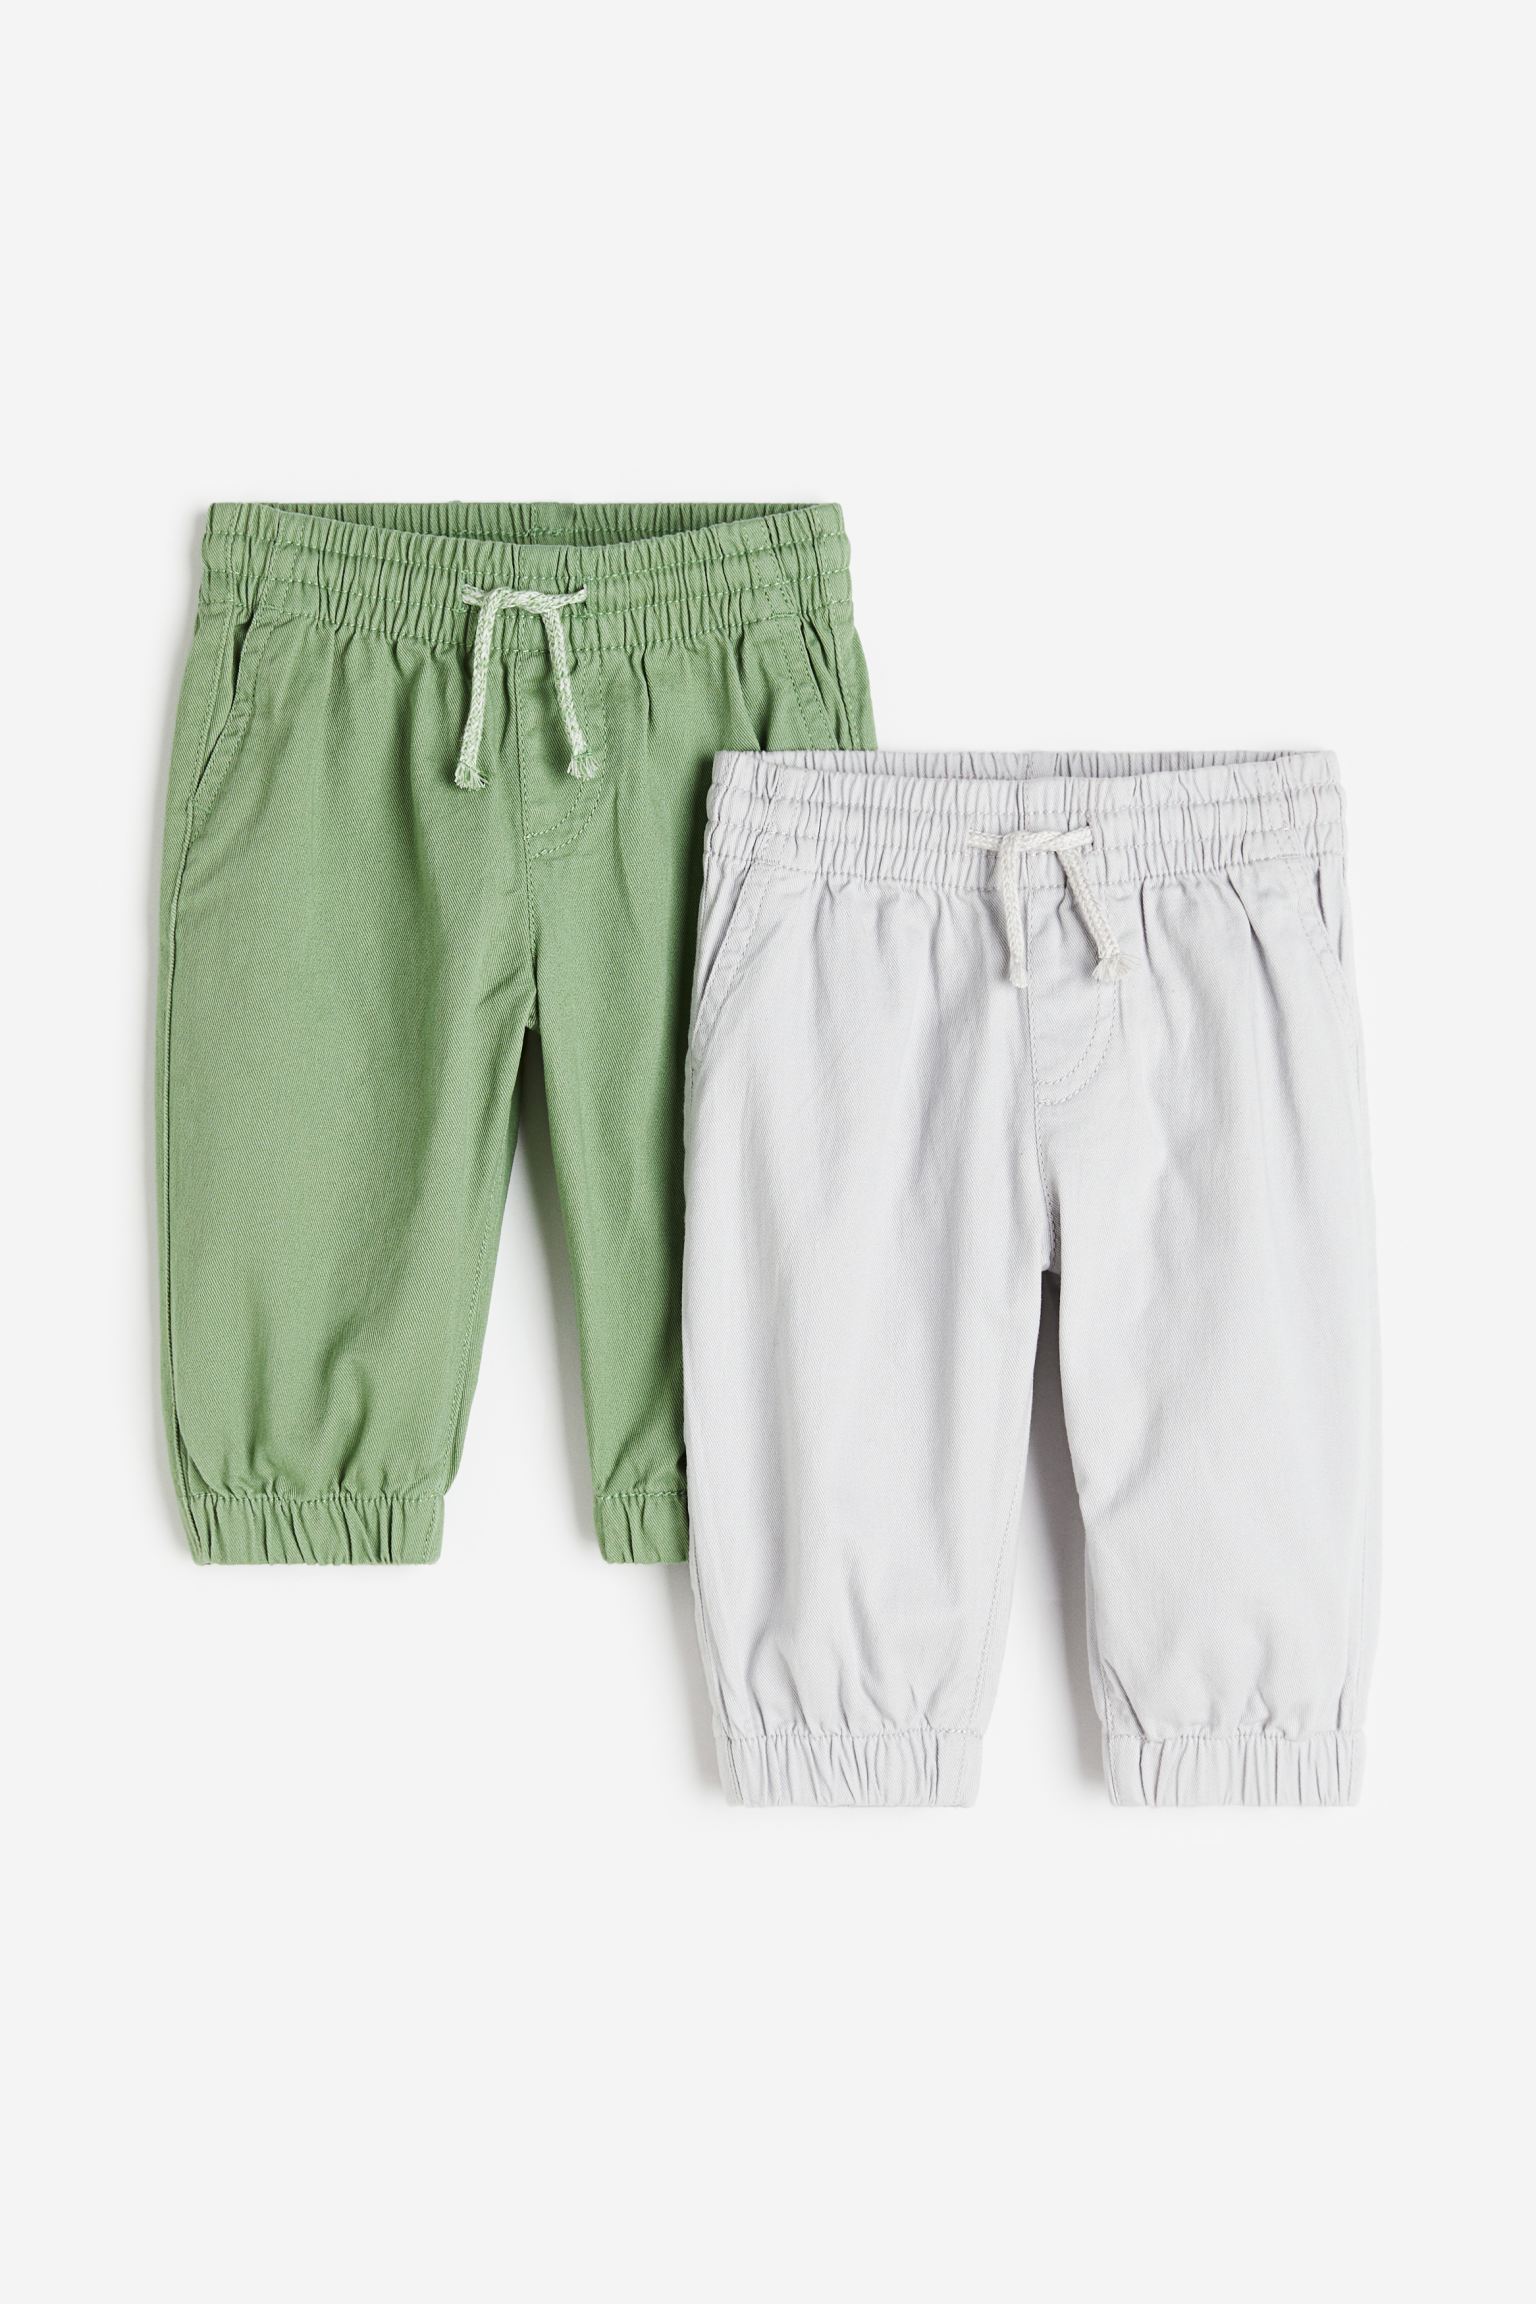 2 шт. джоггеров H&M для мальчиков 68 Зеленый/Светло-серый (доставка из-за рубежа)